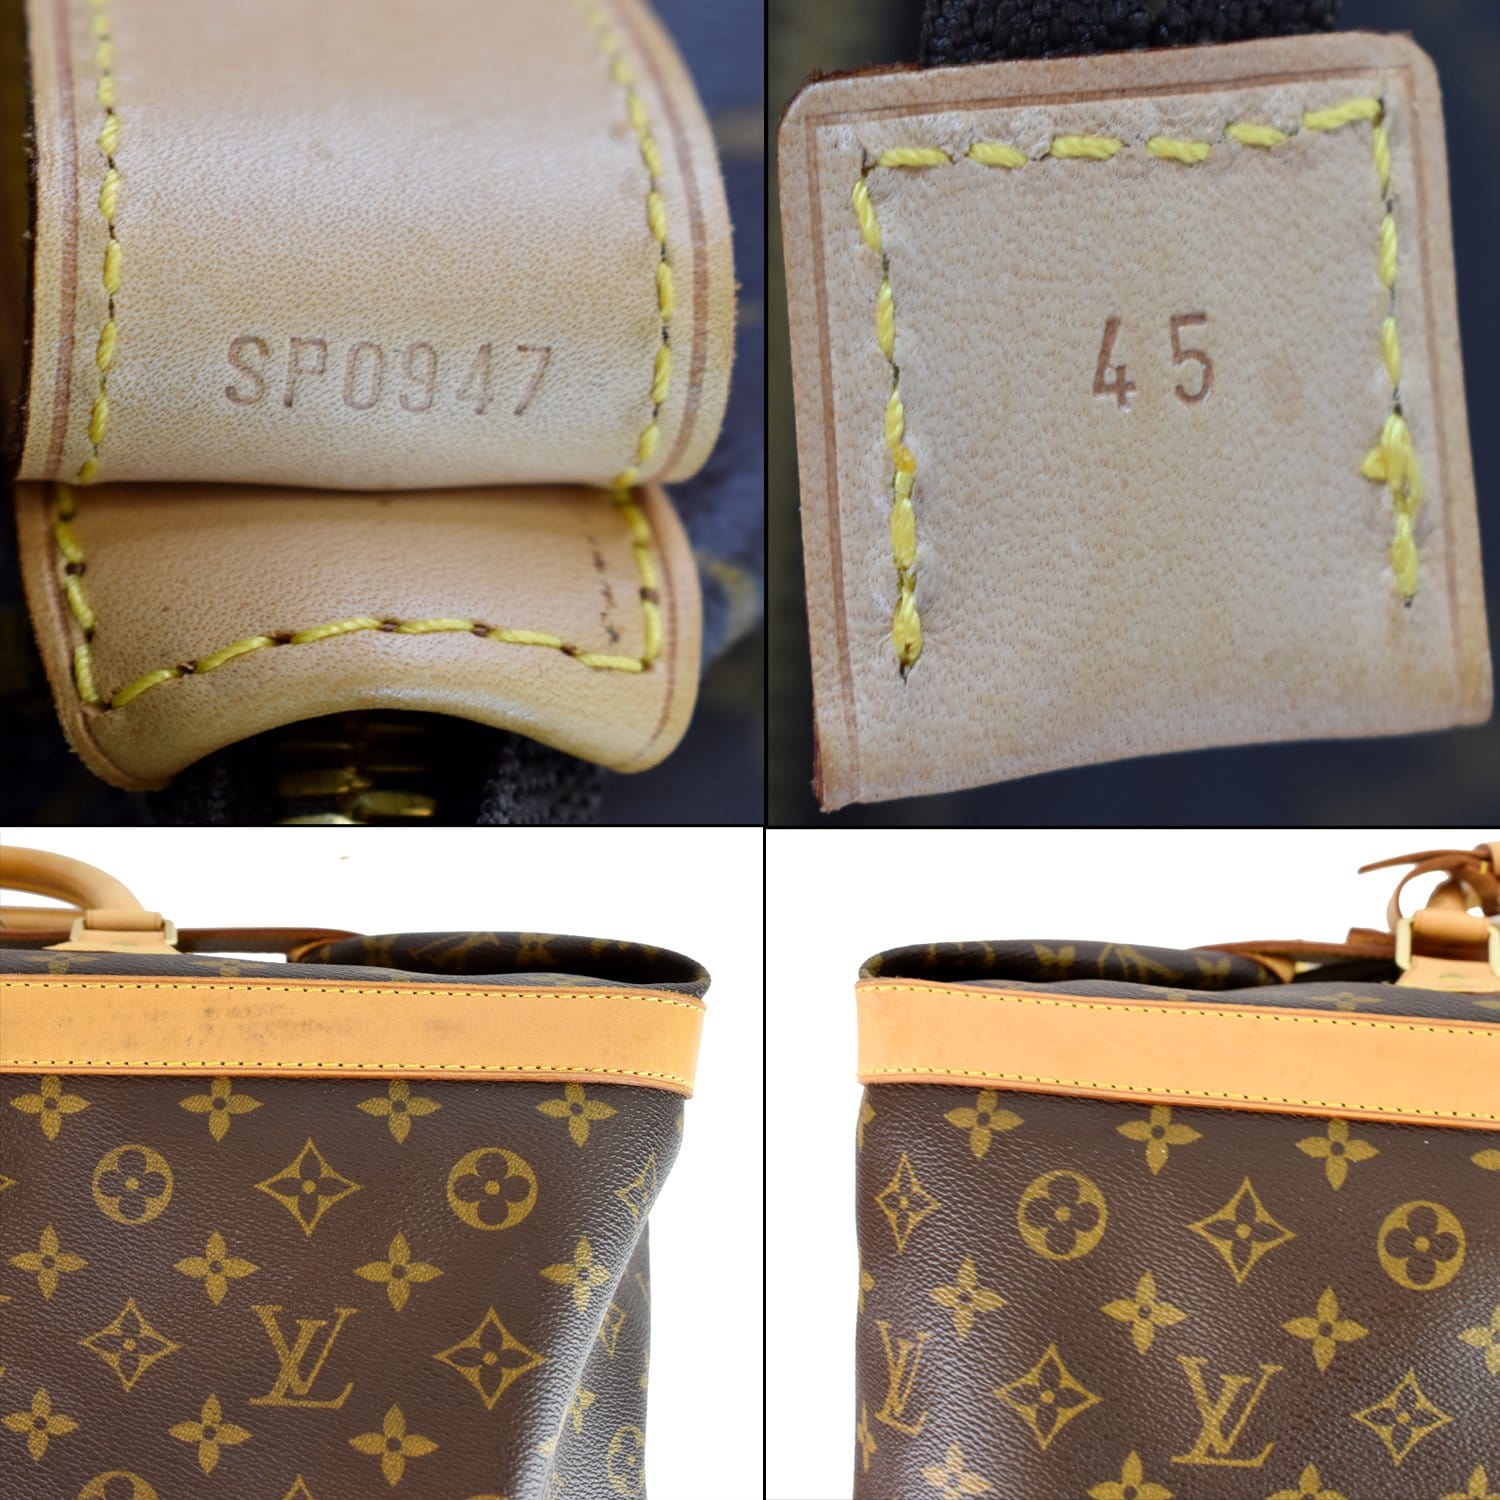 Louis Vuitton, Bags, Louis Vuitton Monogram Cruiser 45 Travel Bag  Weekender